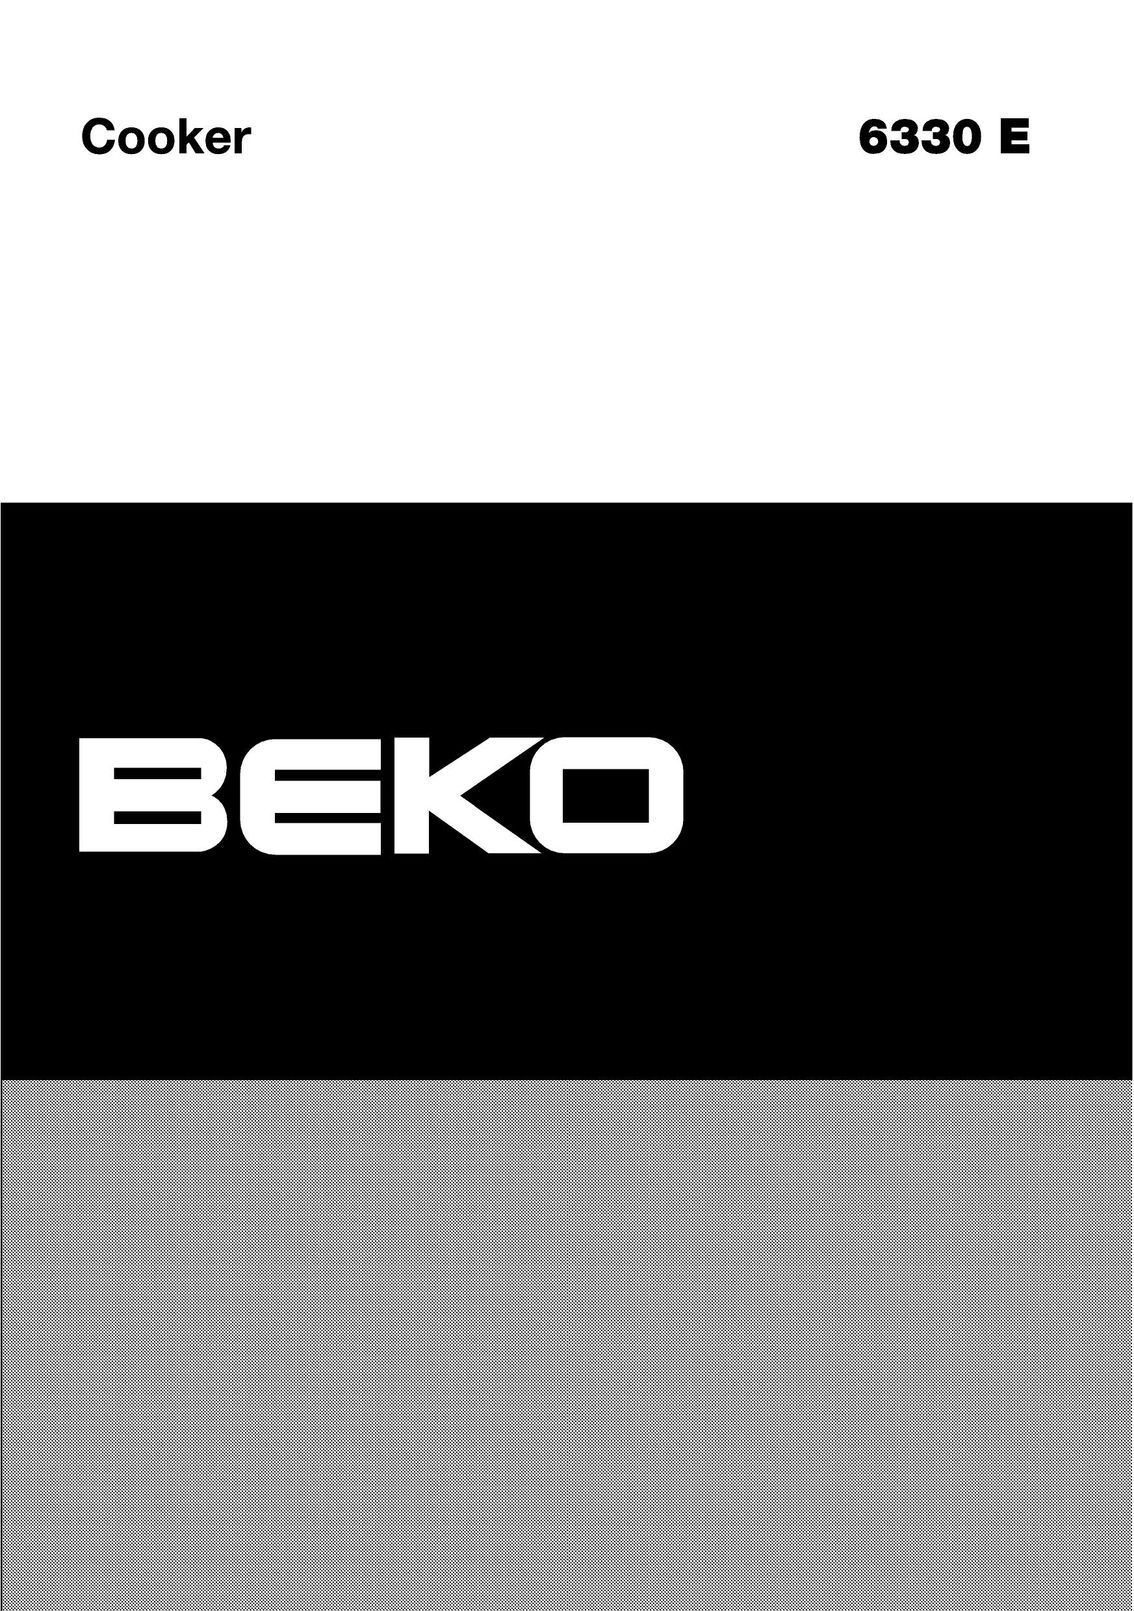 Beko 6330 E Cooktop User Manual